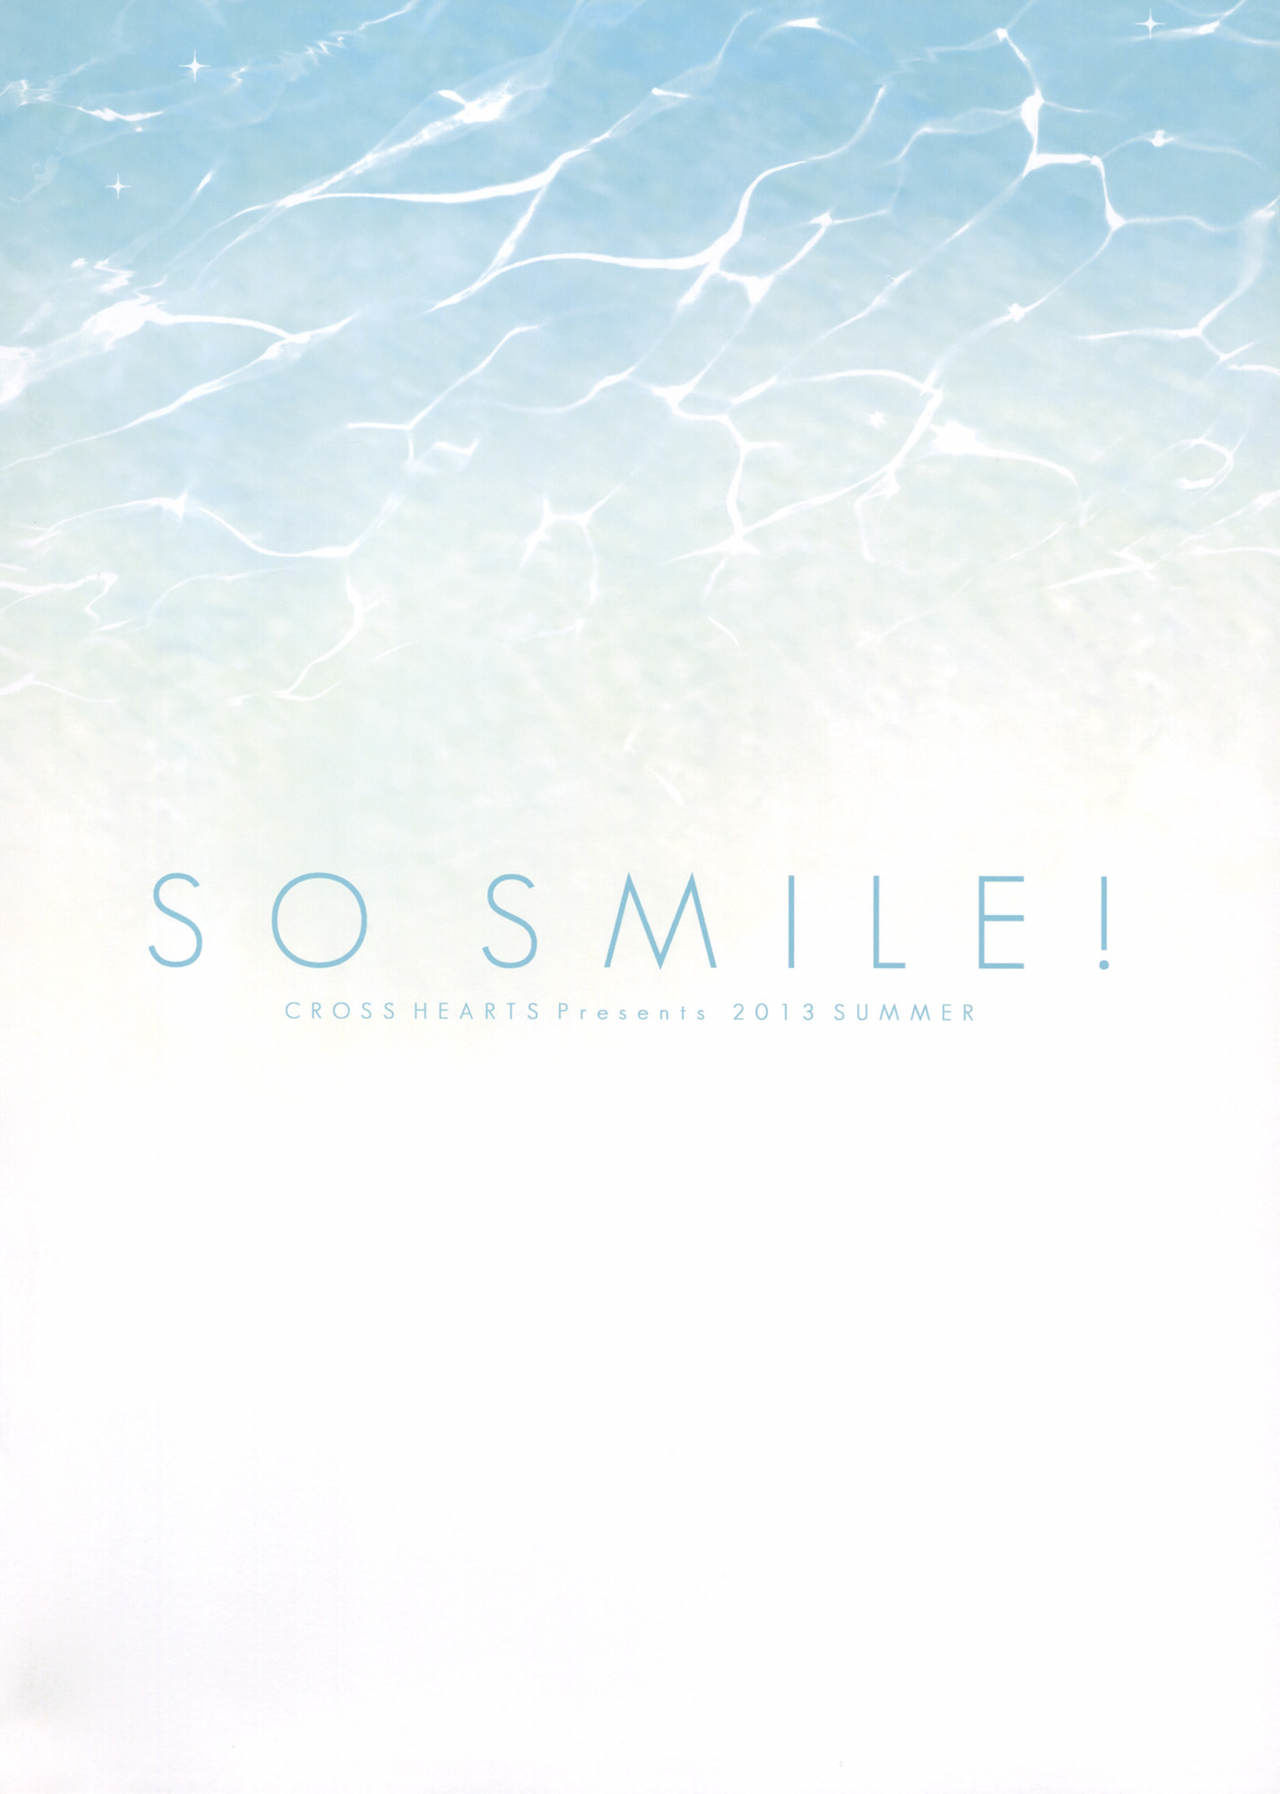 [cross corações (ayase hazuki)] Então, smile! (super sonico) [2013 09 01] [smdc]